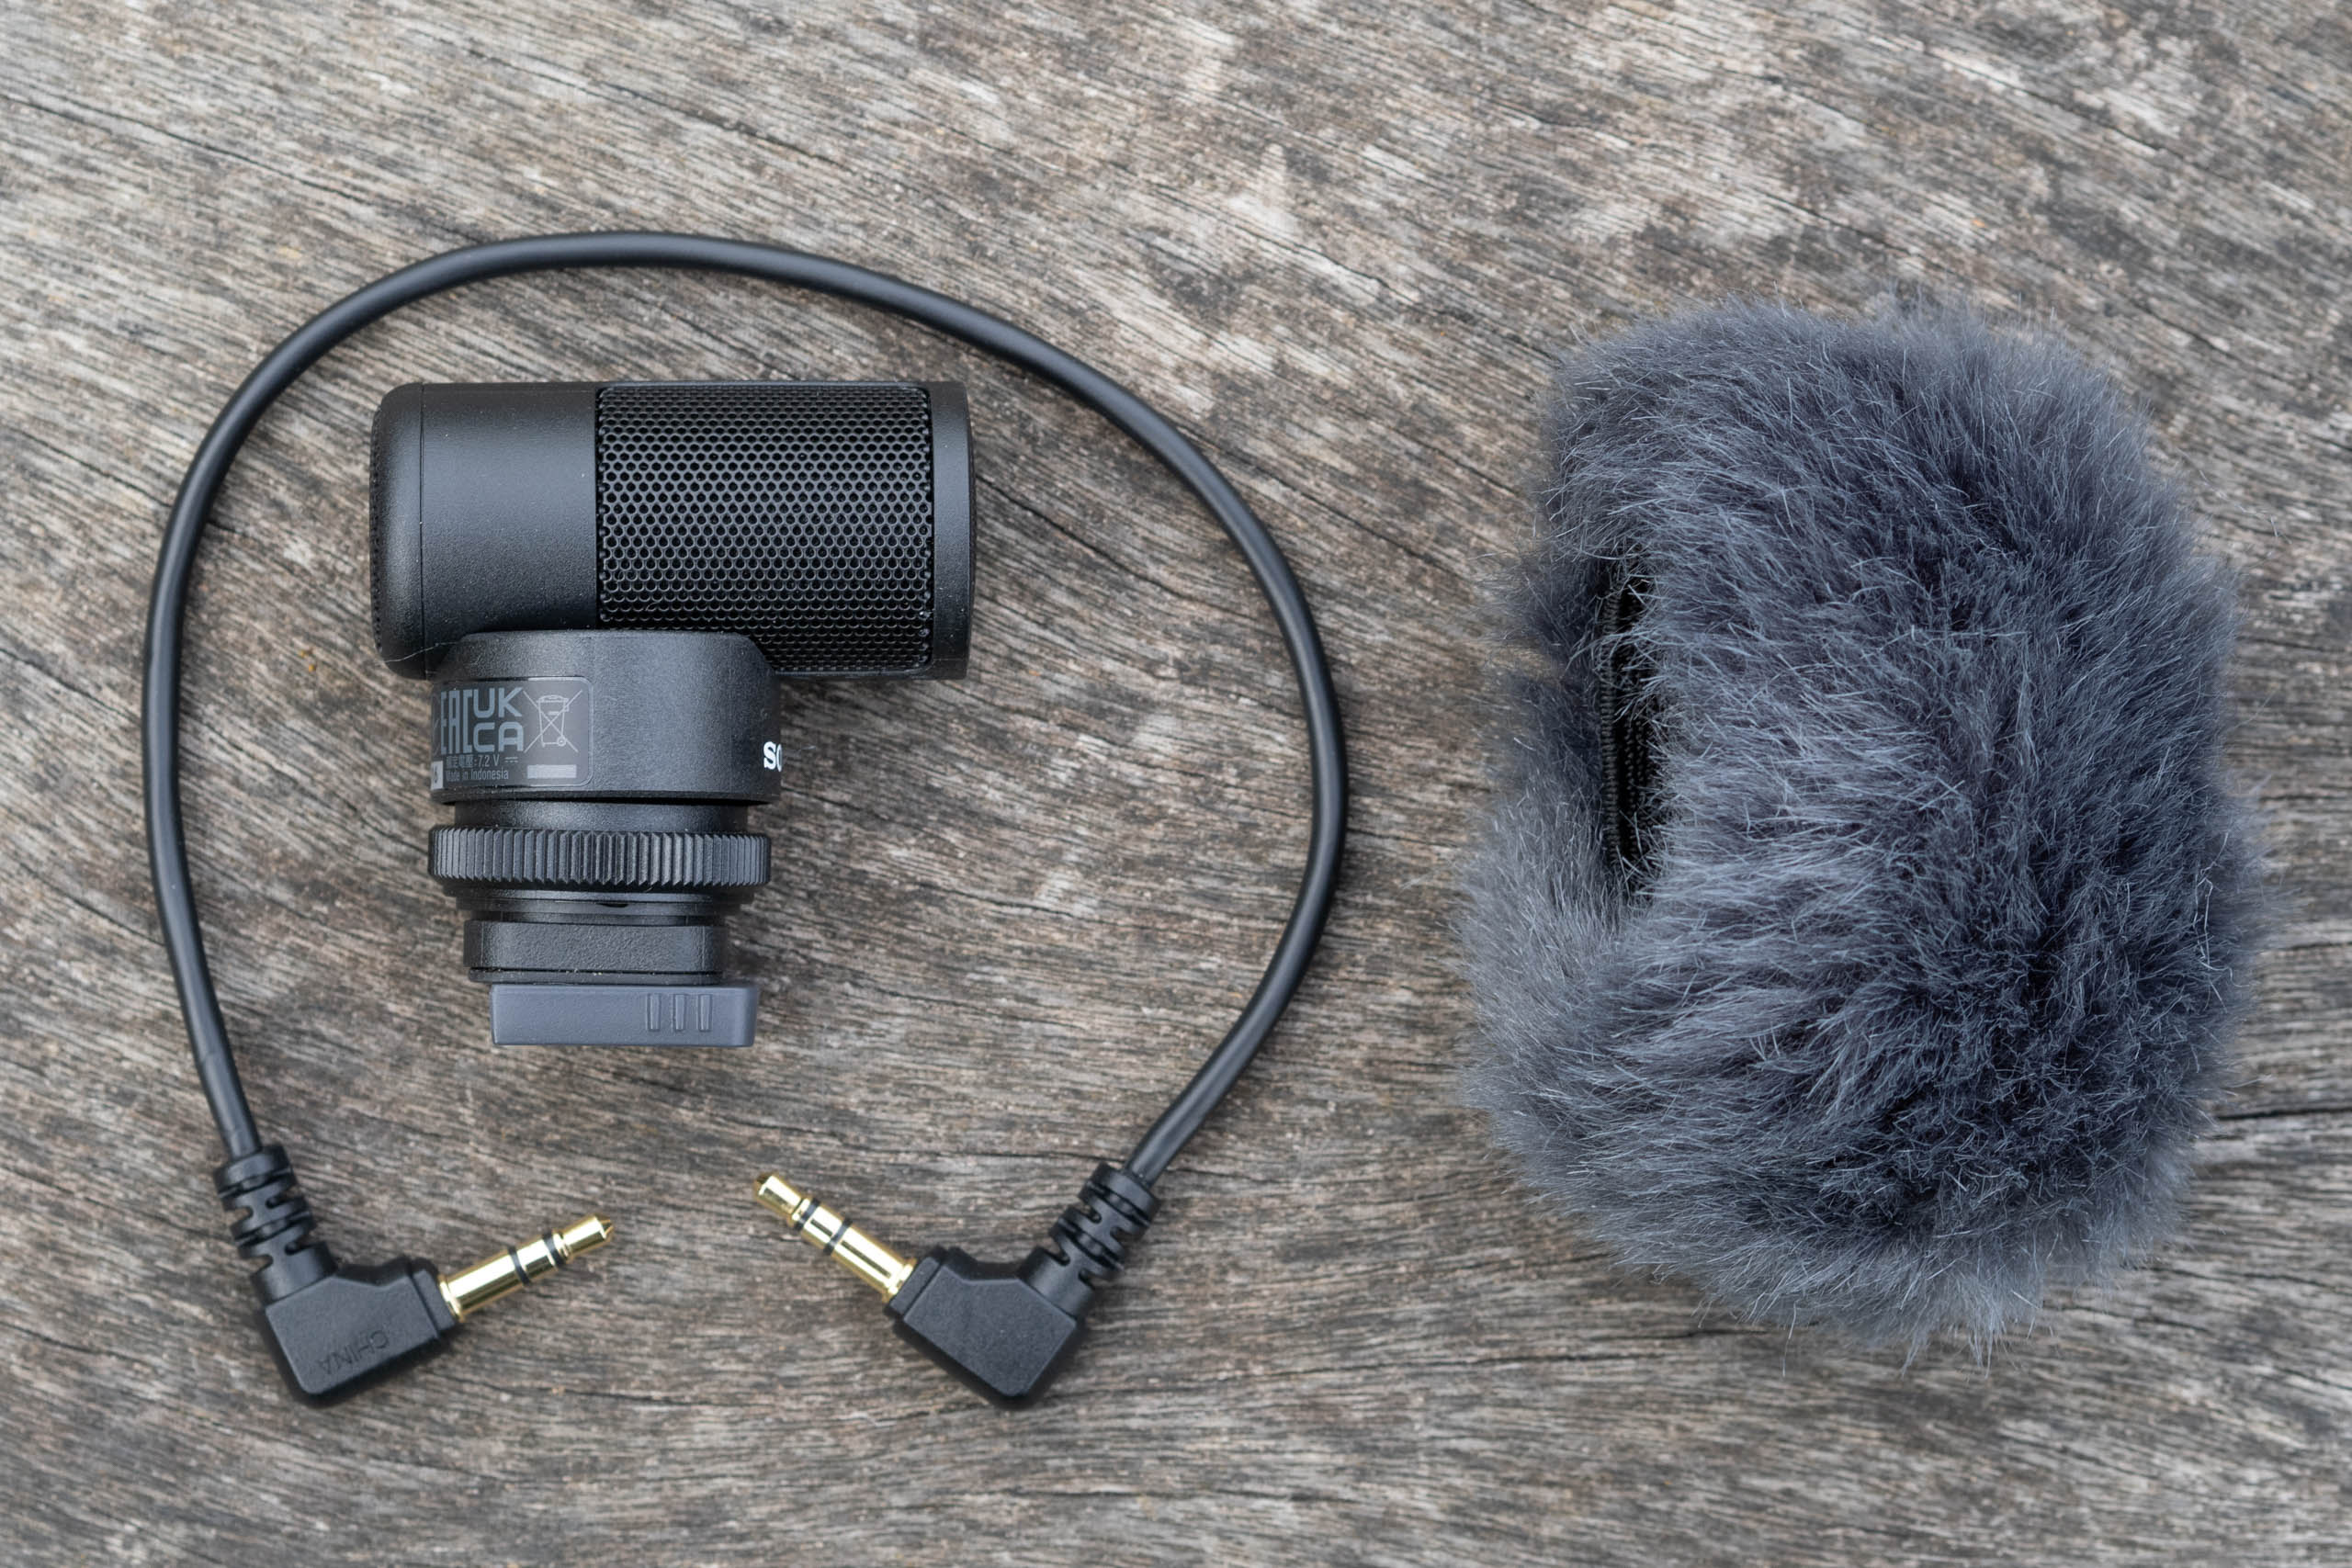 Sony ECM-G1 Shotgun Microphone review - Amateur Photographer